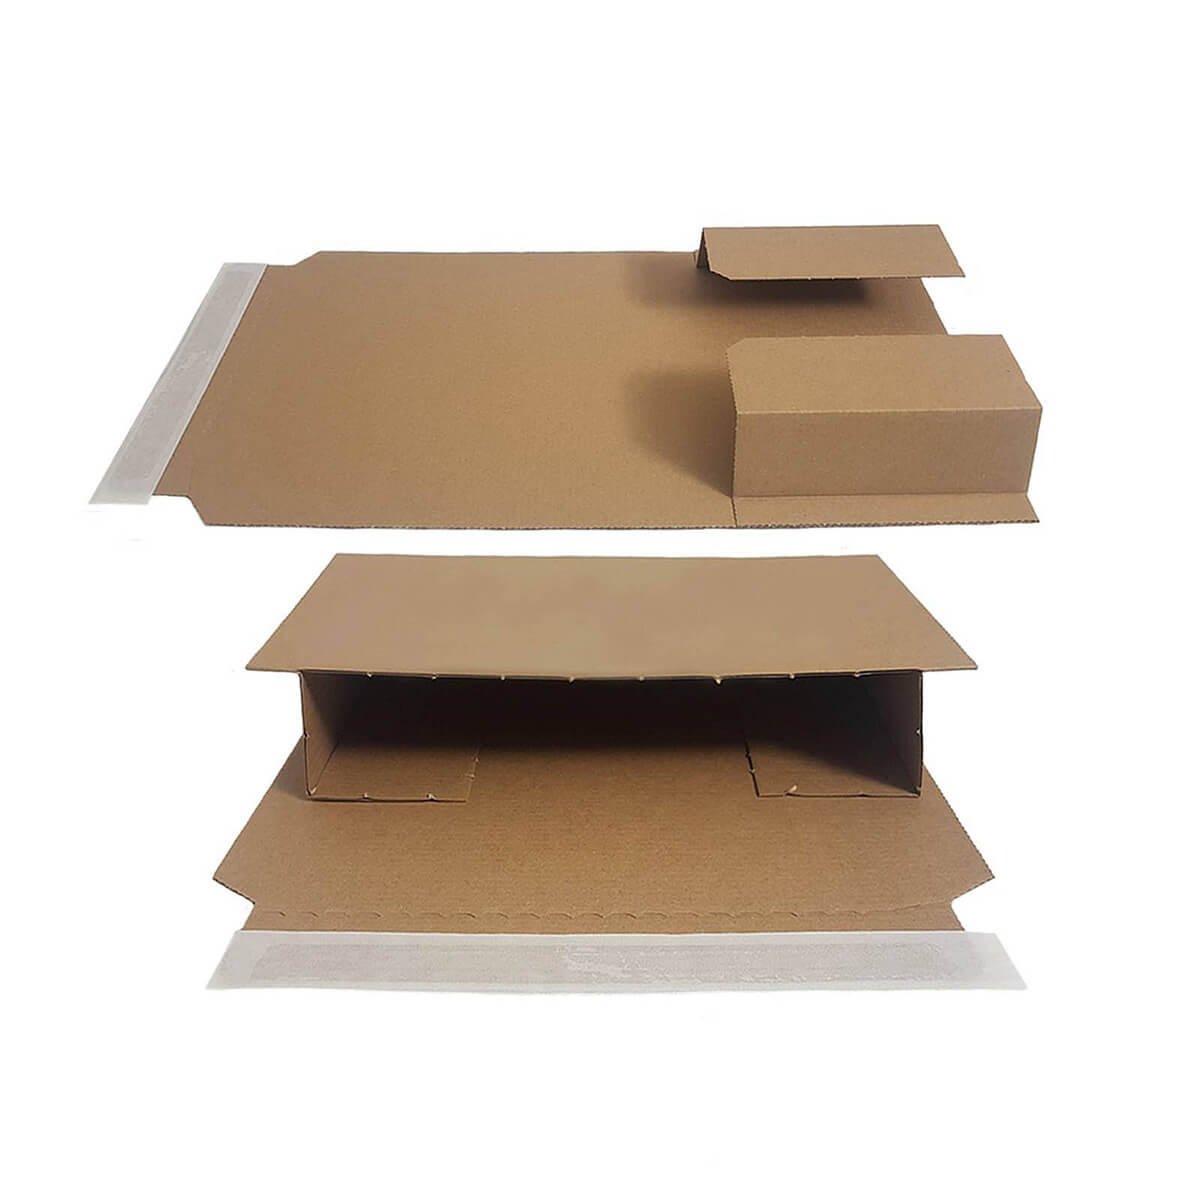 Buchverpackung 456x320x70 mm Wickelverpackung aus Pappe braun